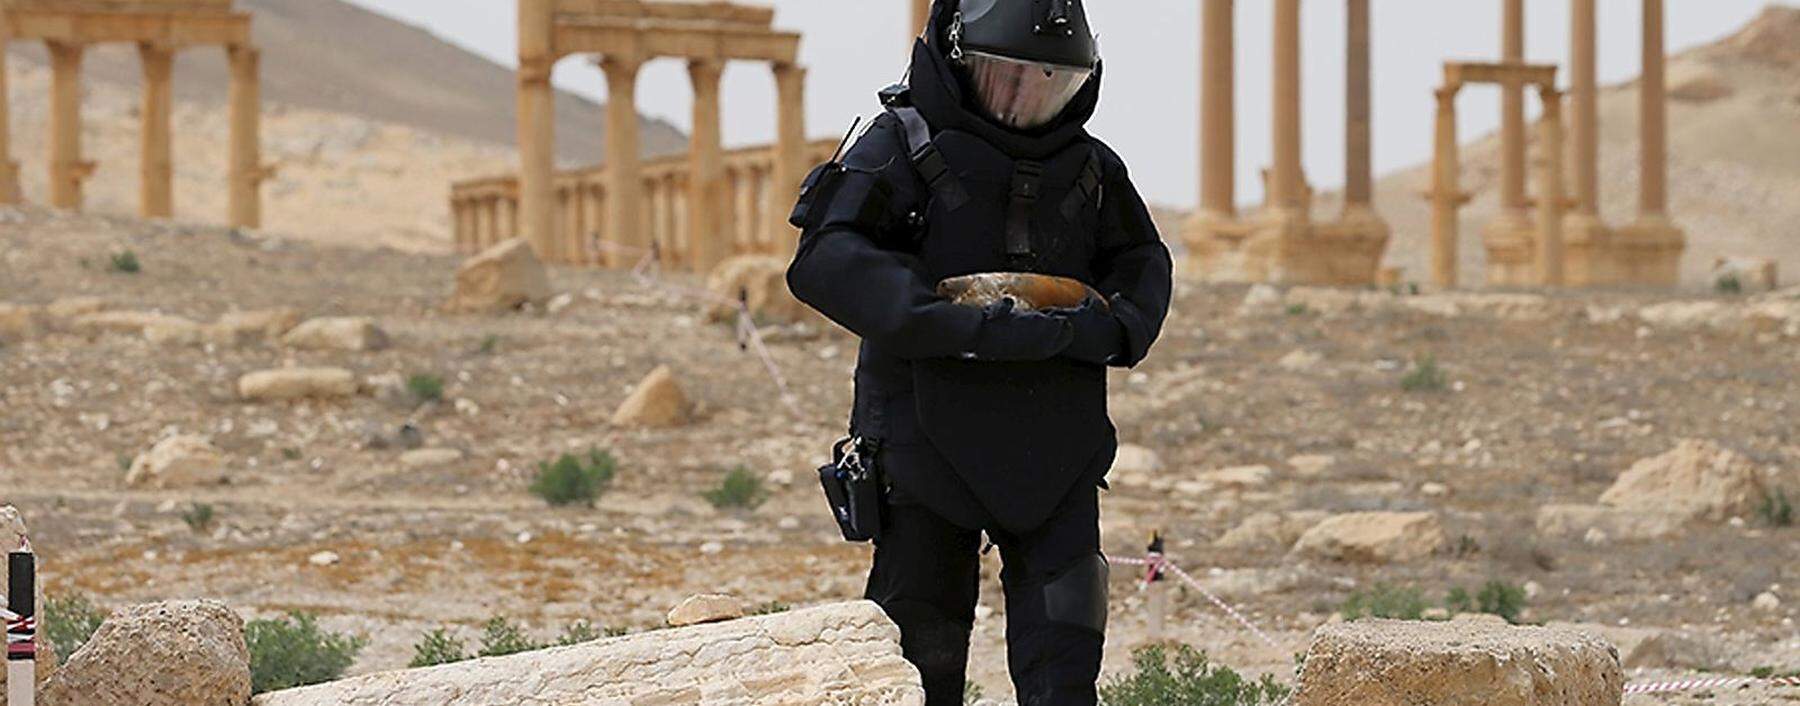 Ein russischer Pionier 2016 vor Ruinen der weltberühmten antiken Stätte Palmyra, vormals  in den Händen des Islamischen Staates. Das Bild wurde vom russischen Verteidigungsministerium veröffentlicht.